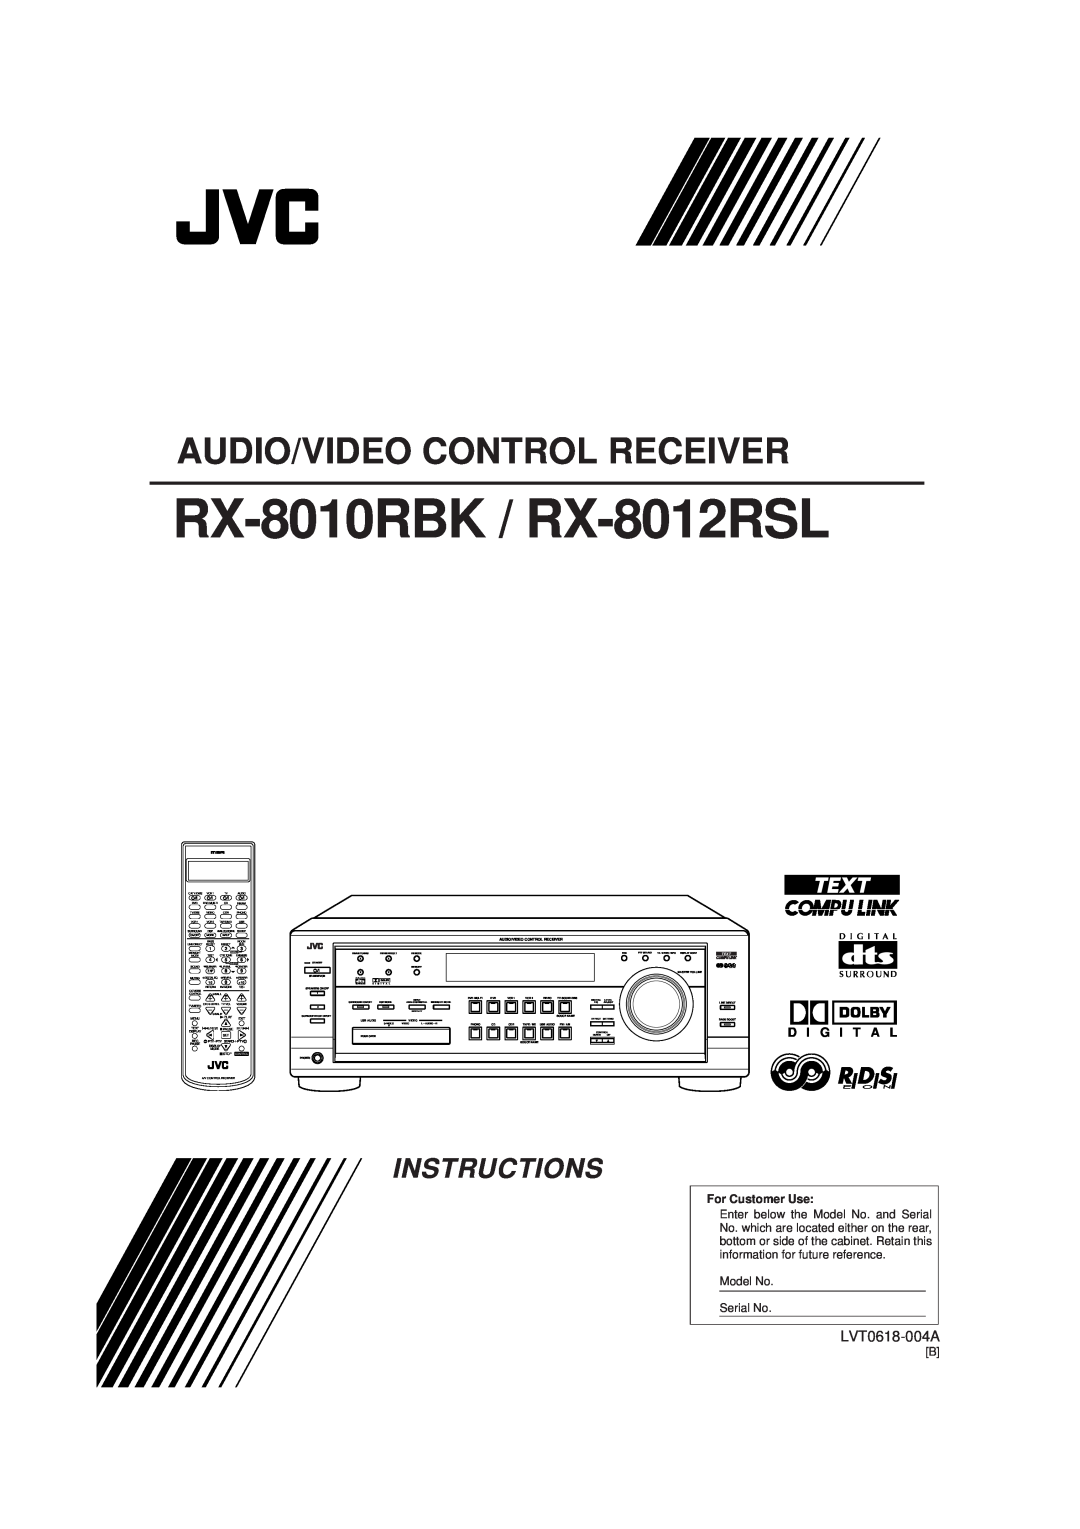 JVC manual RX-8010RBK / RX-8012RSL, Audio/Video Control Receiver, Instructions, LVT0618-004A, D I G I T A L 